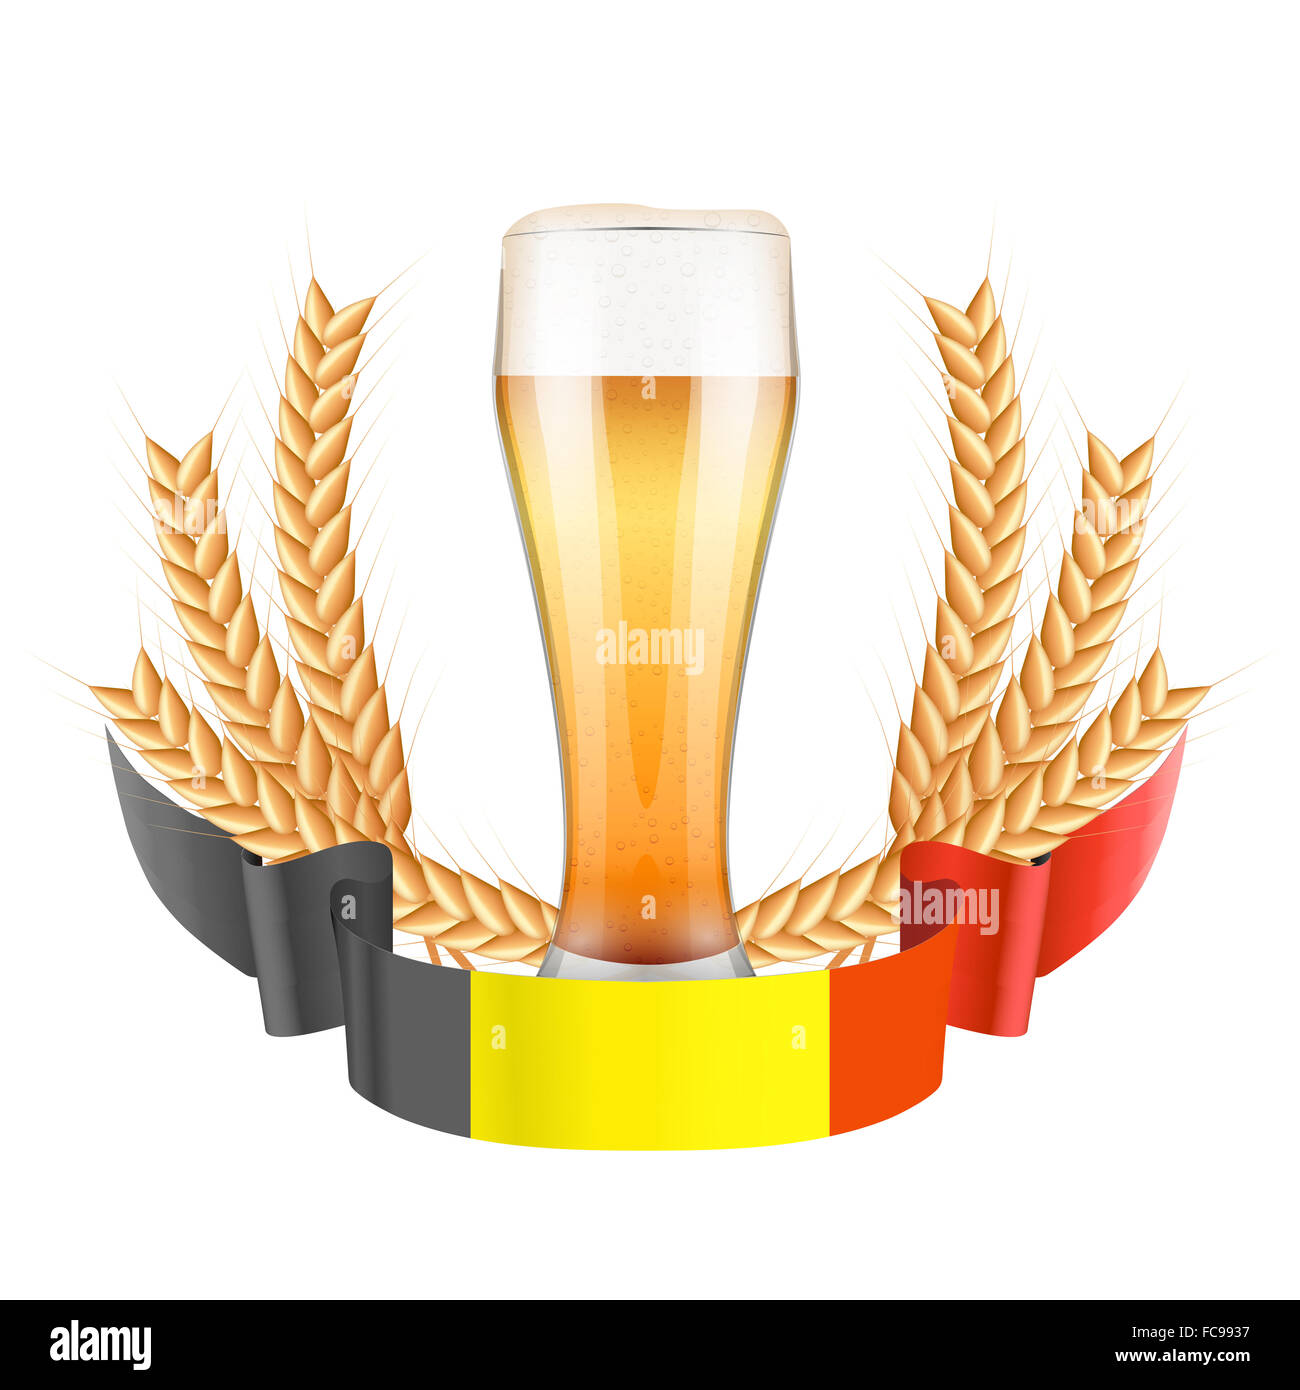 Etichetta di birreria con luce vetro della birra e del nastro Foto Stock